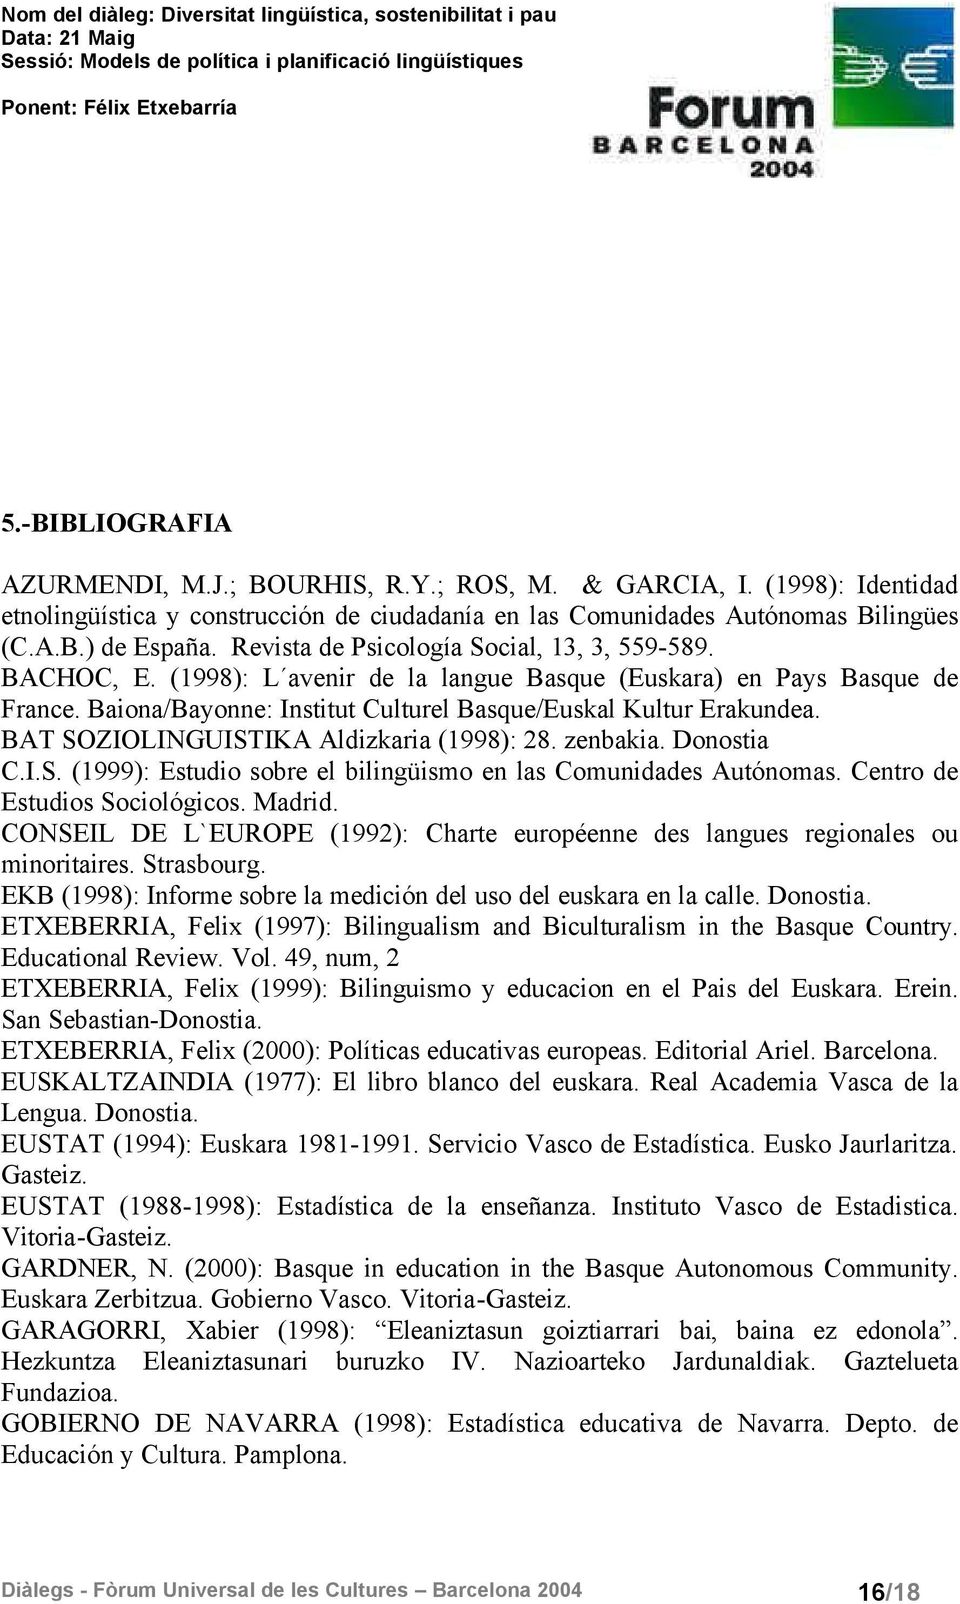 BAT SOZIOLINGUISTIKA Aldizkaria (1998): 28. zenbakia. Donostia C.I.S. (1999): Estudio sobre el bilingüismo en las Comunidades Autónomas. Centro de Estudios Sociológicos. Madrid.